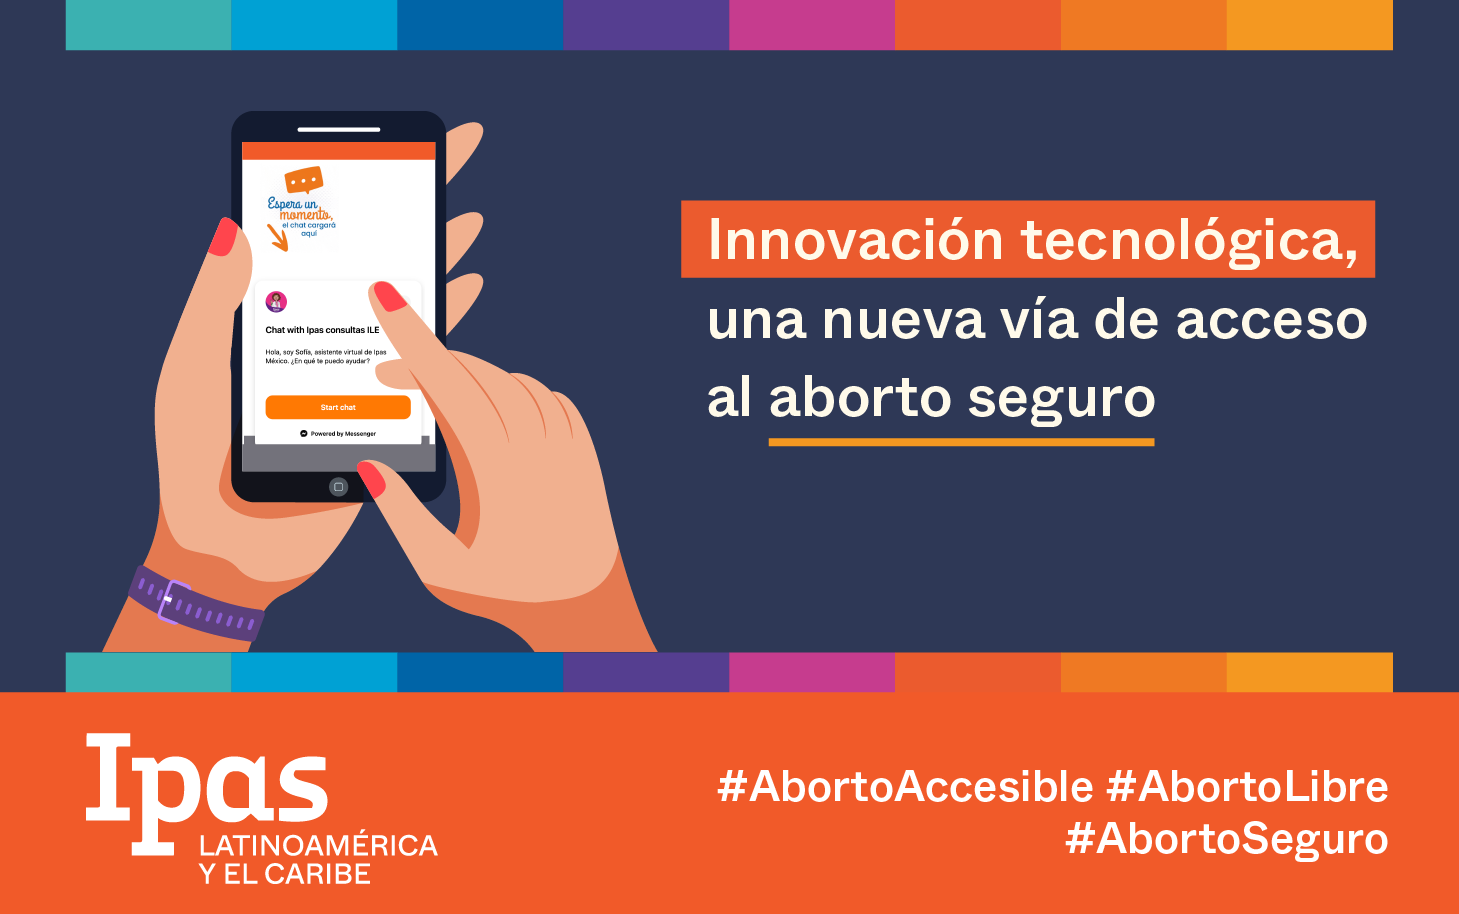 La innovación tecnológica, una nueva vía de acceso al aborto seguro